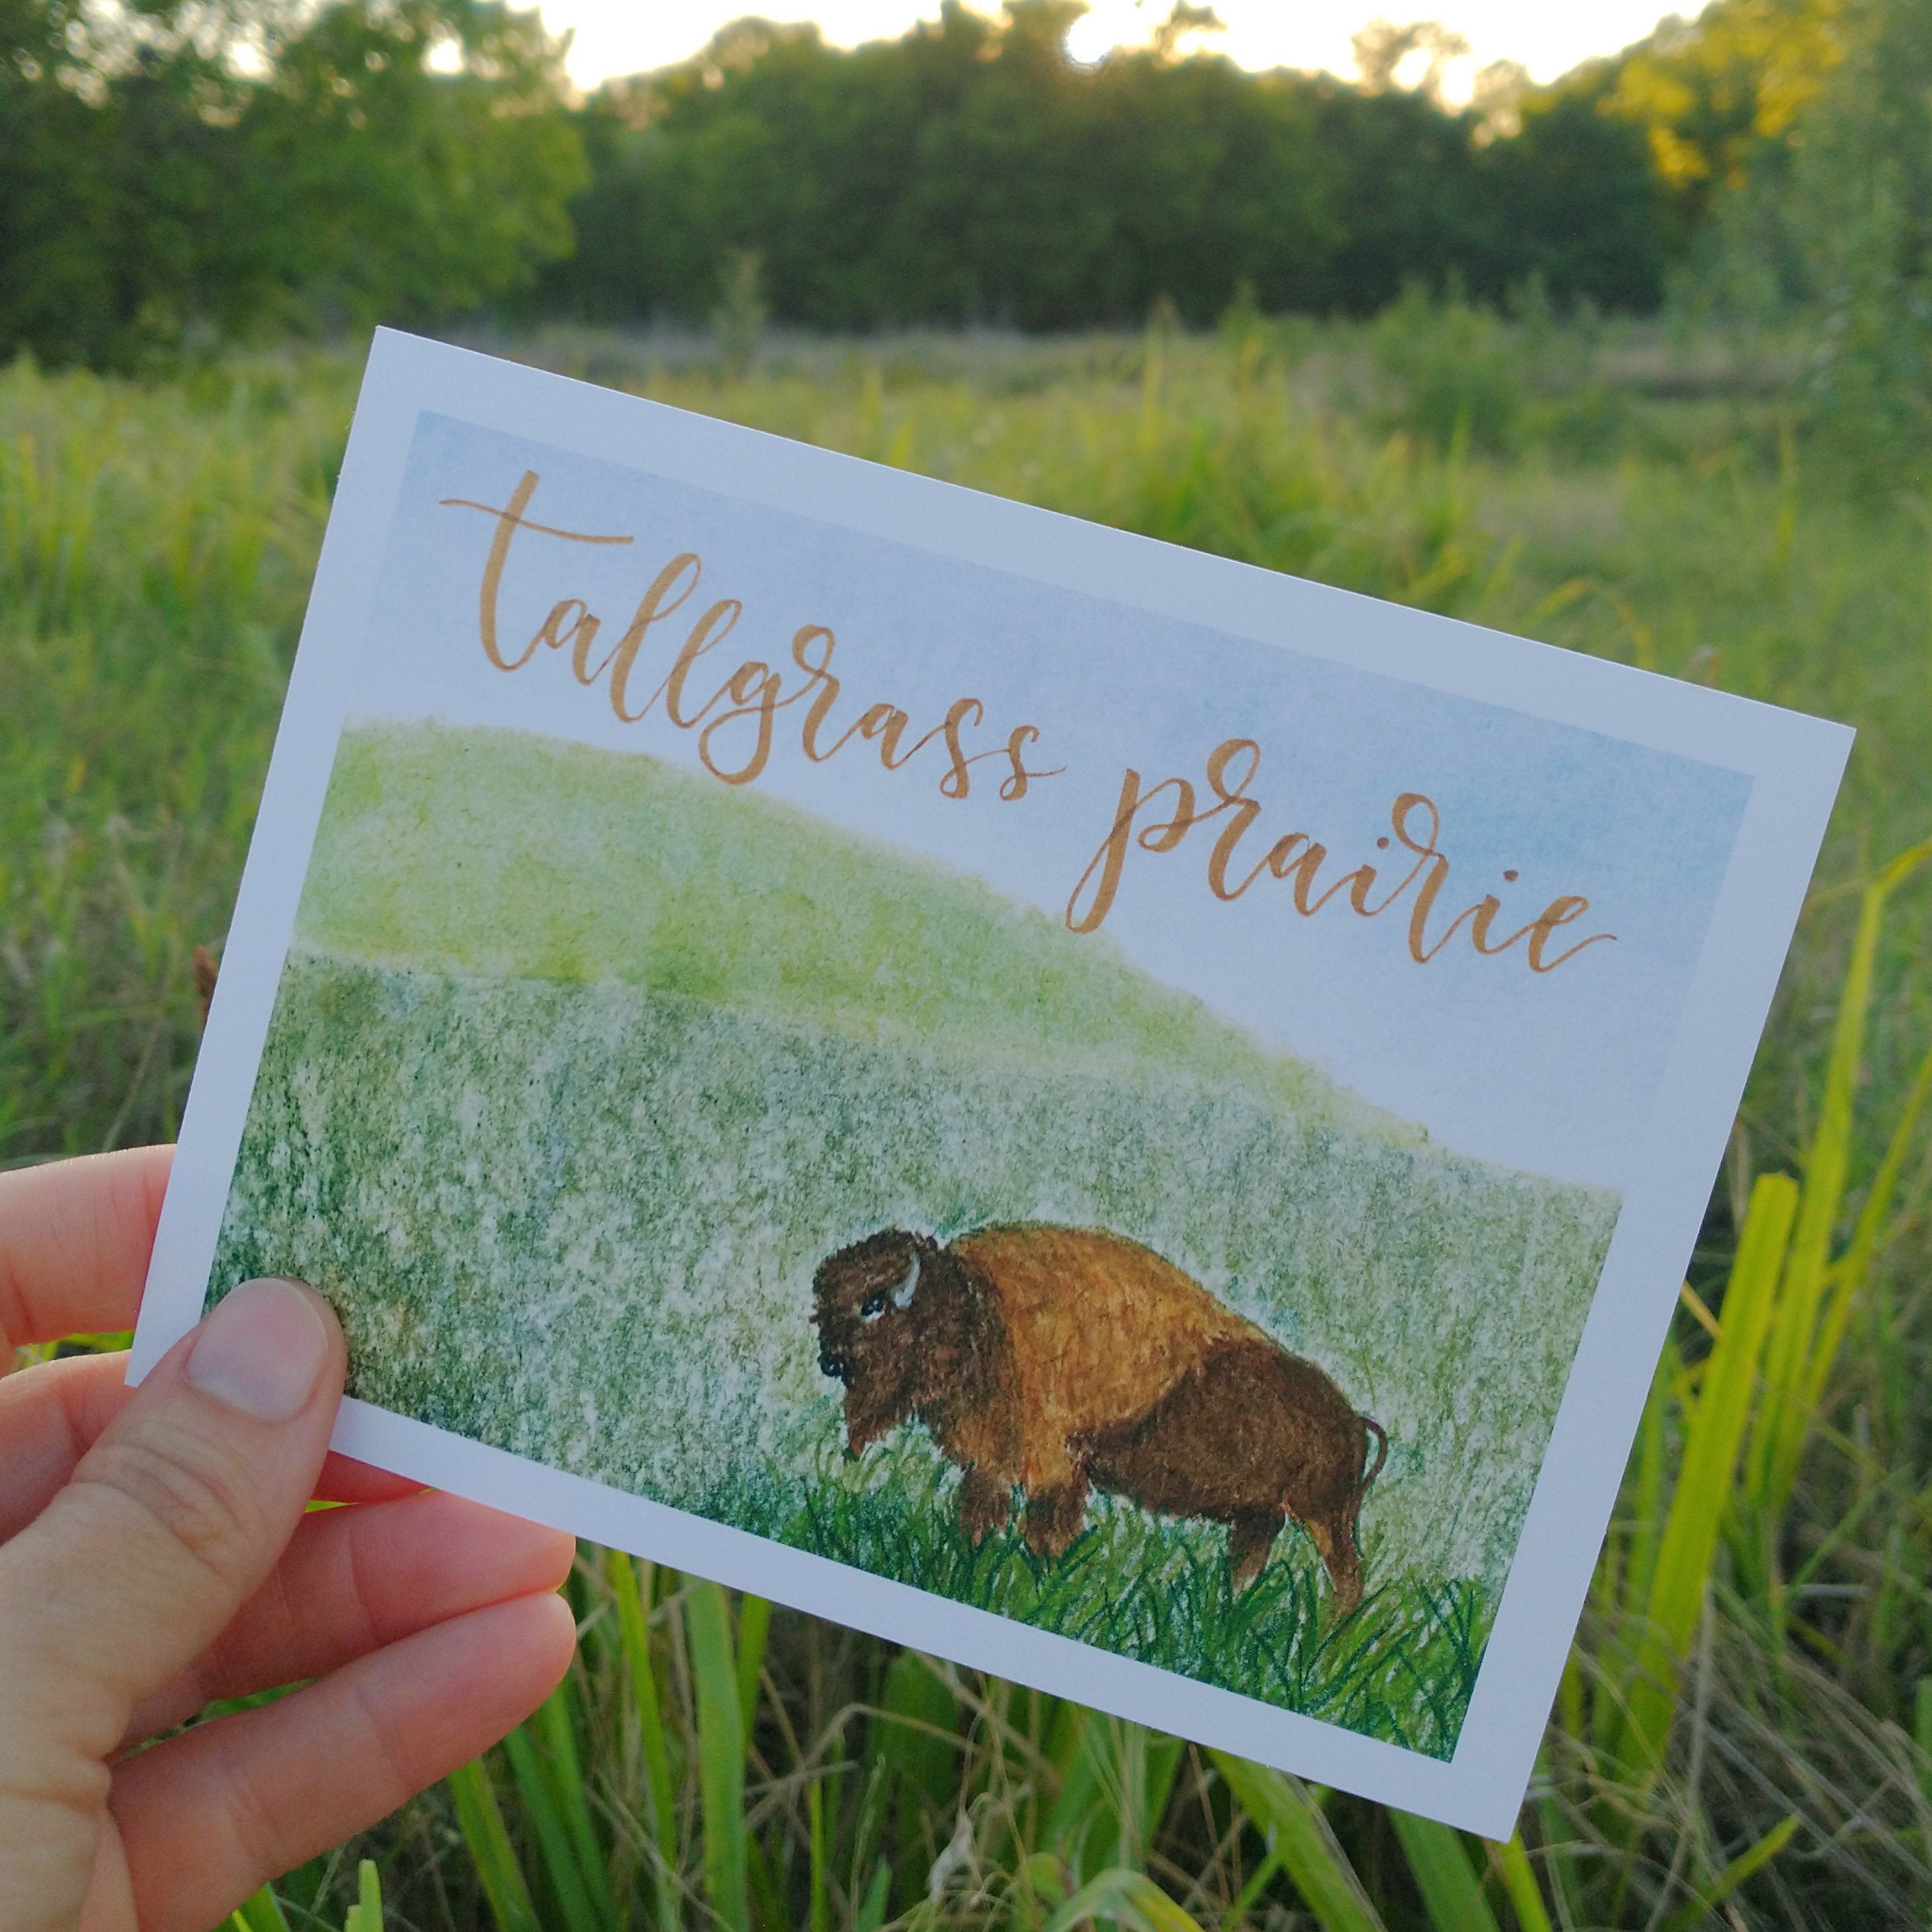 Tallgrass Prairie National Preserve Unit Study